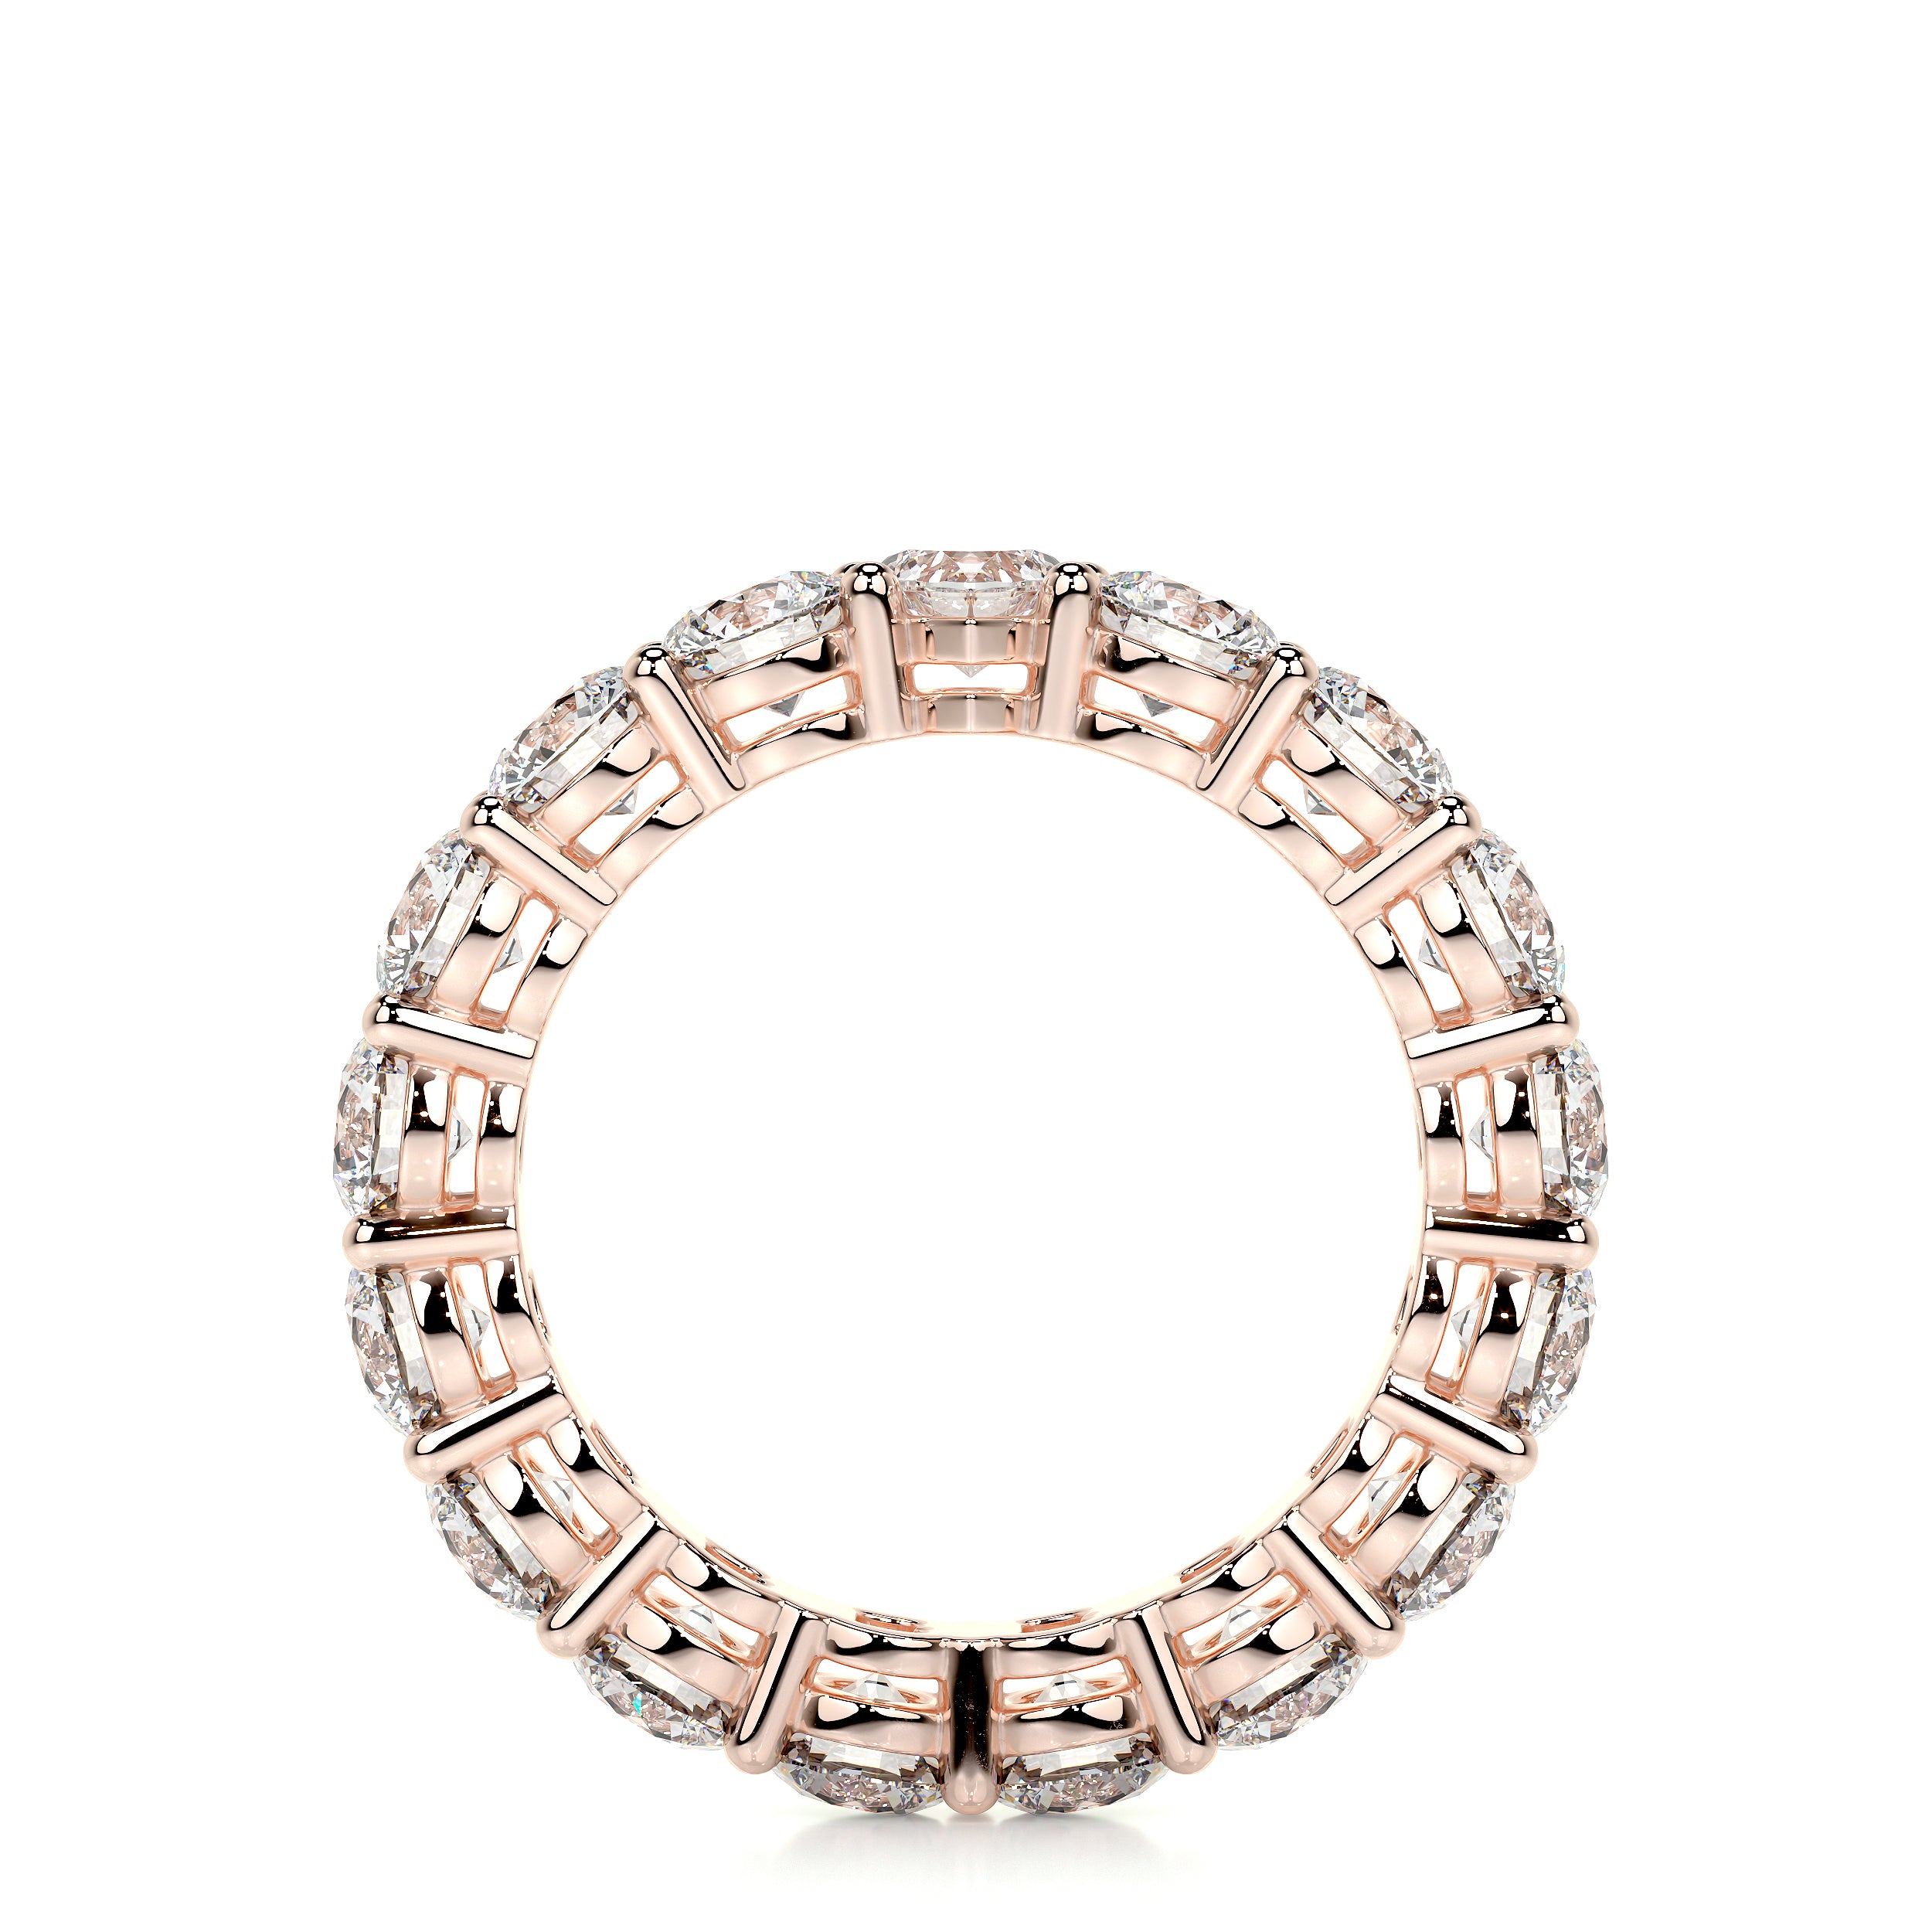 Anne Lab Grown Diamond Wedding Ring   (4 Carat) -14K Rose Gold